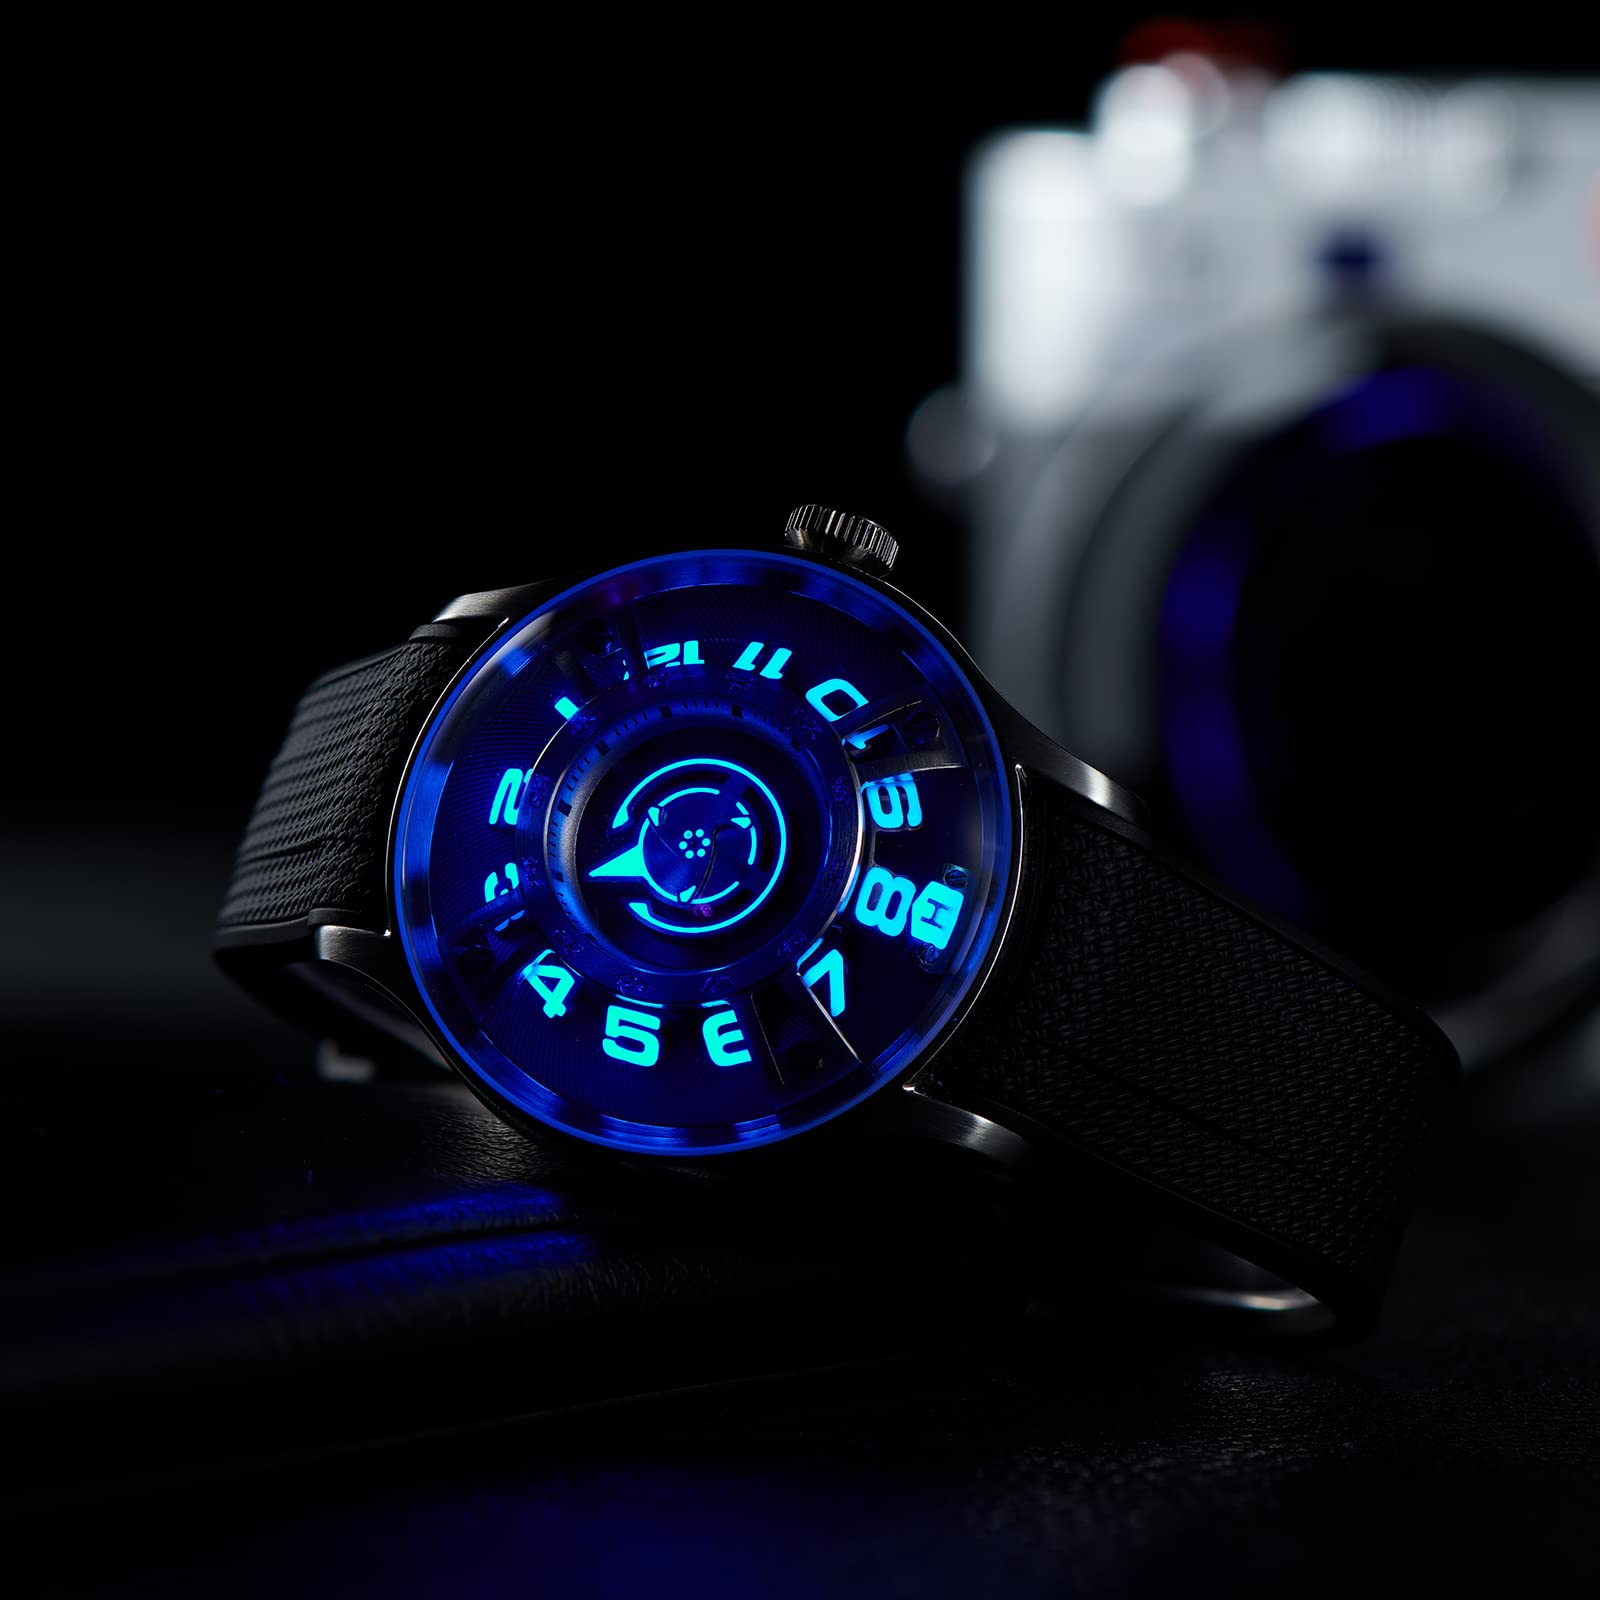 OBLVLO Marke Herren Easy Reader Selbstaufziehende Automatikuhr Luxus Edelstahl Gummi Wasserdicht Leuchtende Armbanduhren für Herren BLM..